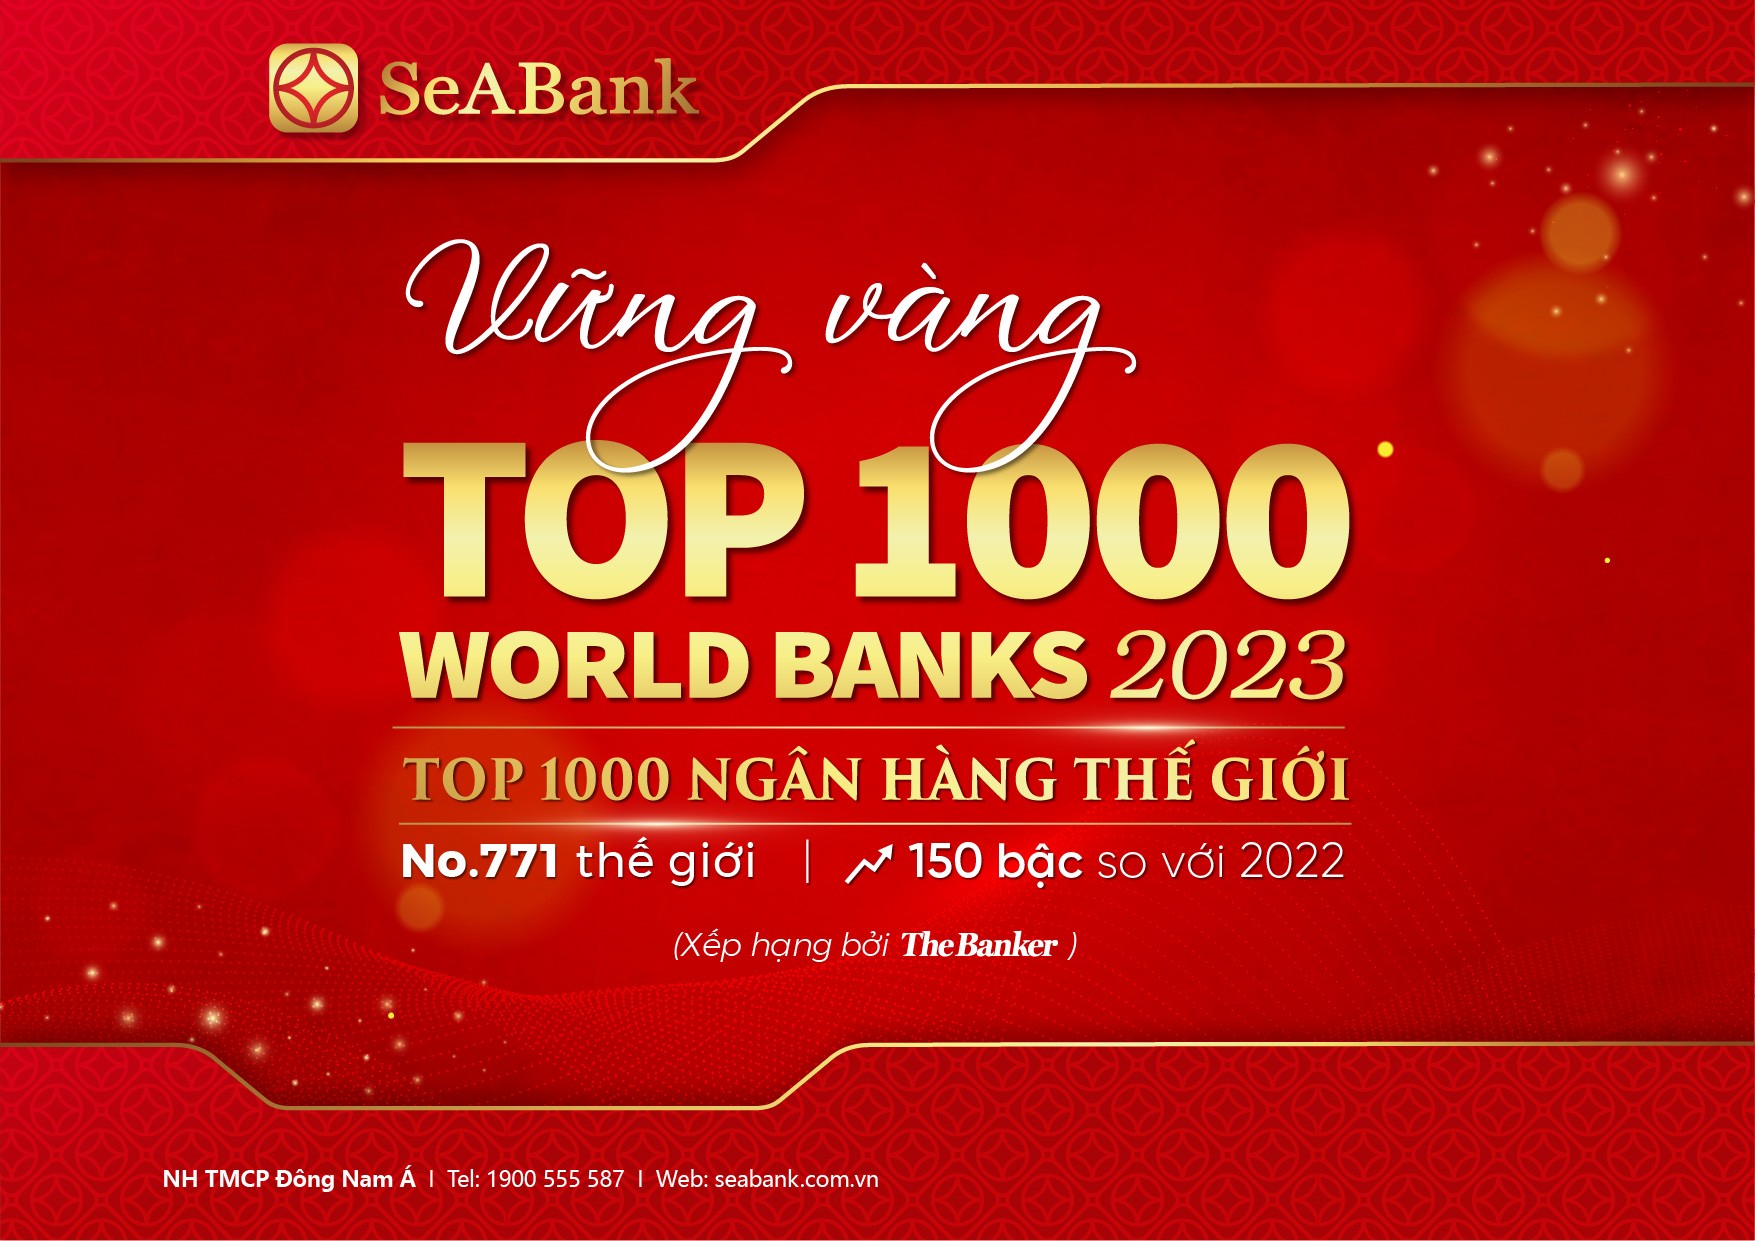 sb-top1000-worldbank-2023-10-02-a4-ngang-copy-2-1696846101.jpg